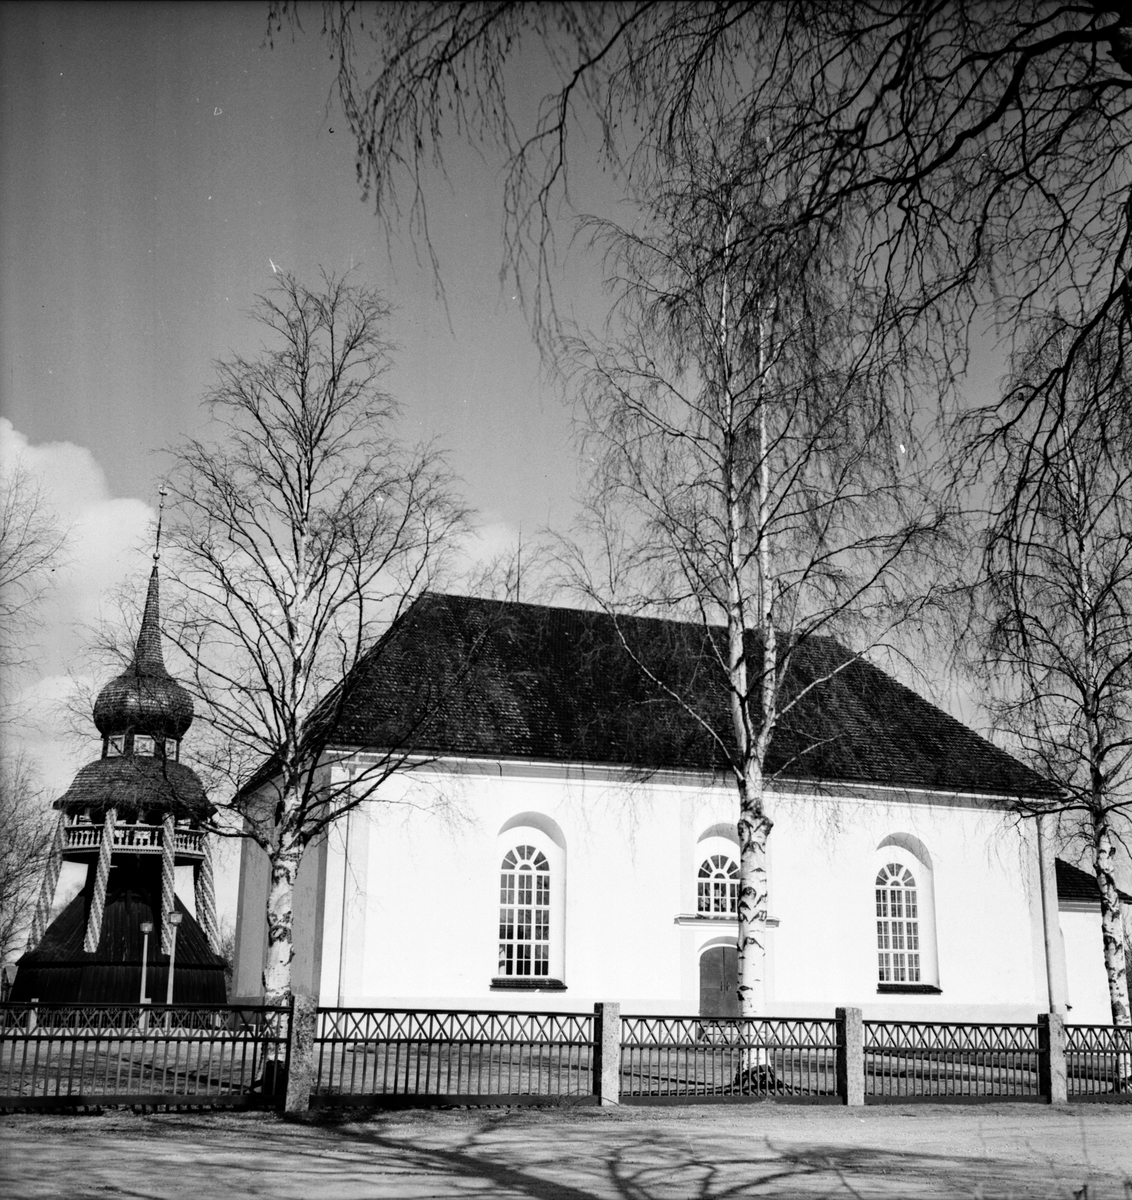 Undersvik,
Kyrkan och kantor Edlund,
Juli 1971